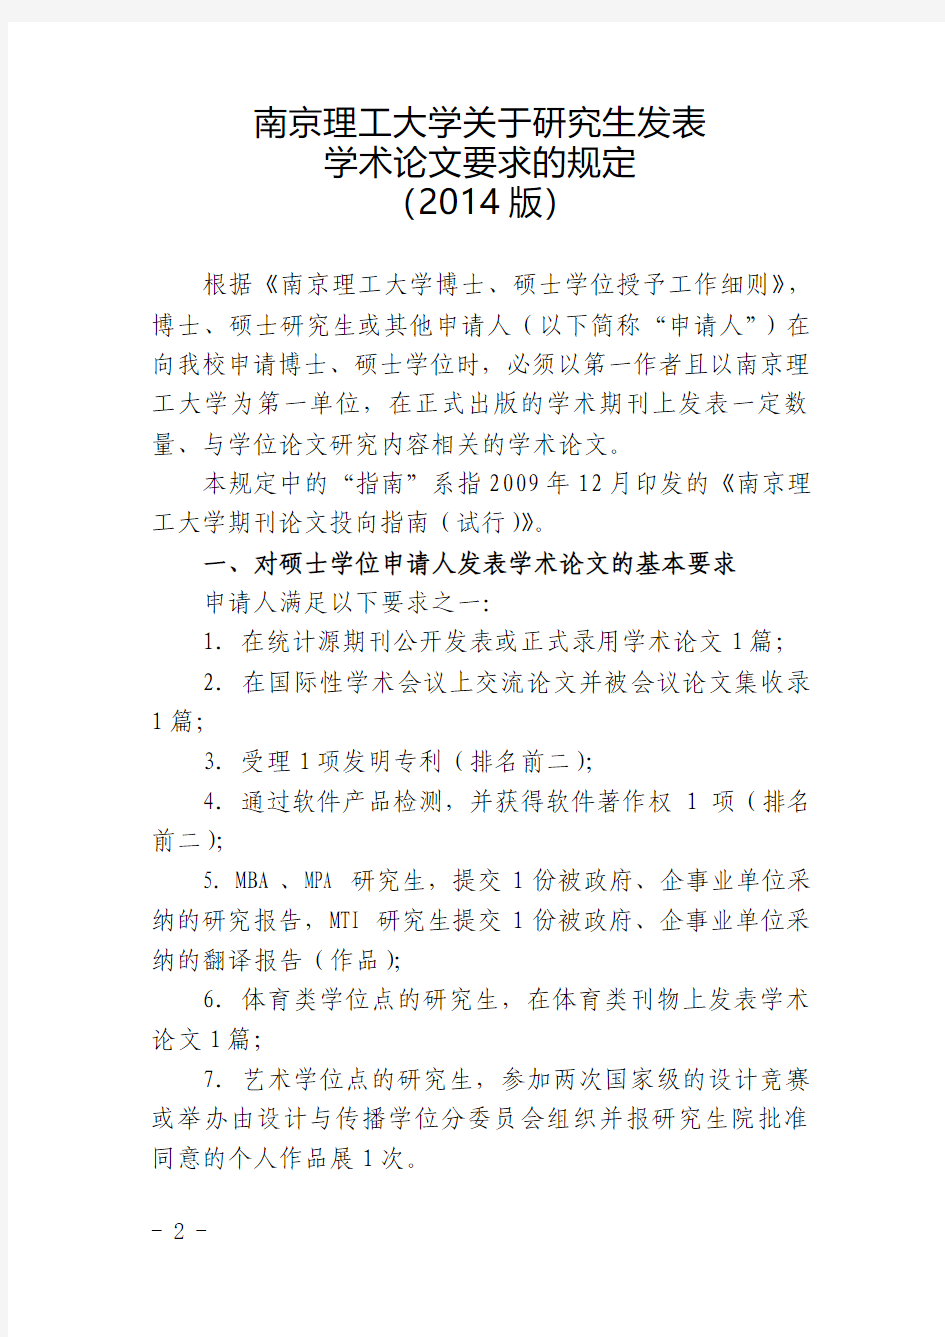 南京理工大学关于研究生发表学术论文要求的规定